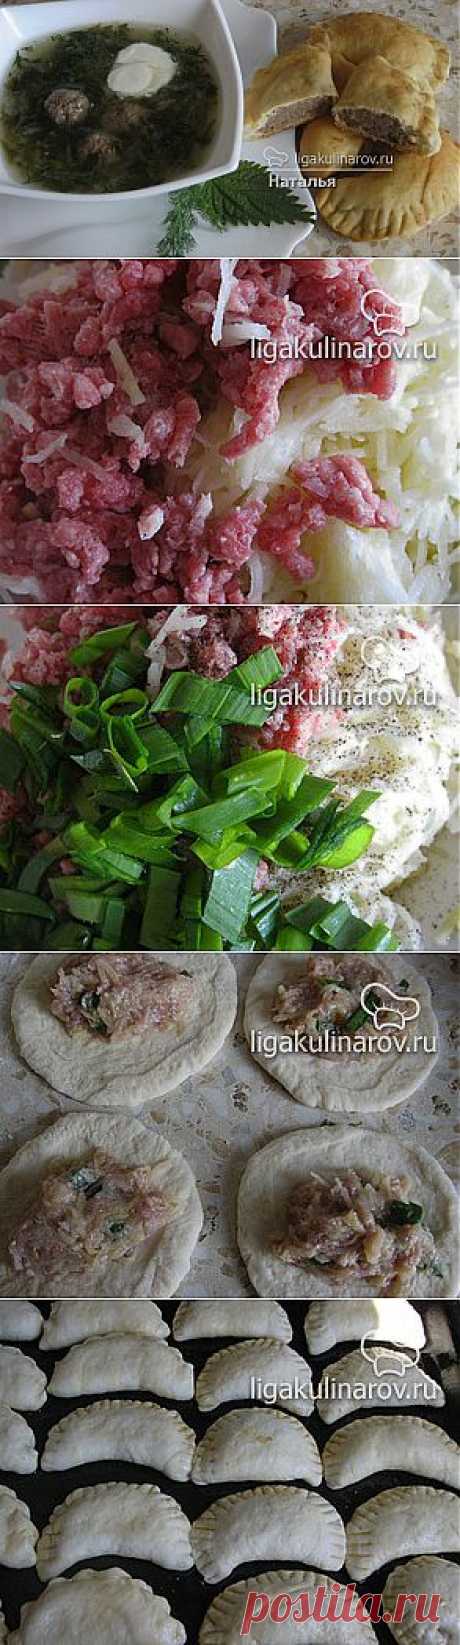 Пирожки с картофелем и мясом – рецепт с фото от Лиги Кулинаров, пошаговый рецепт